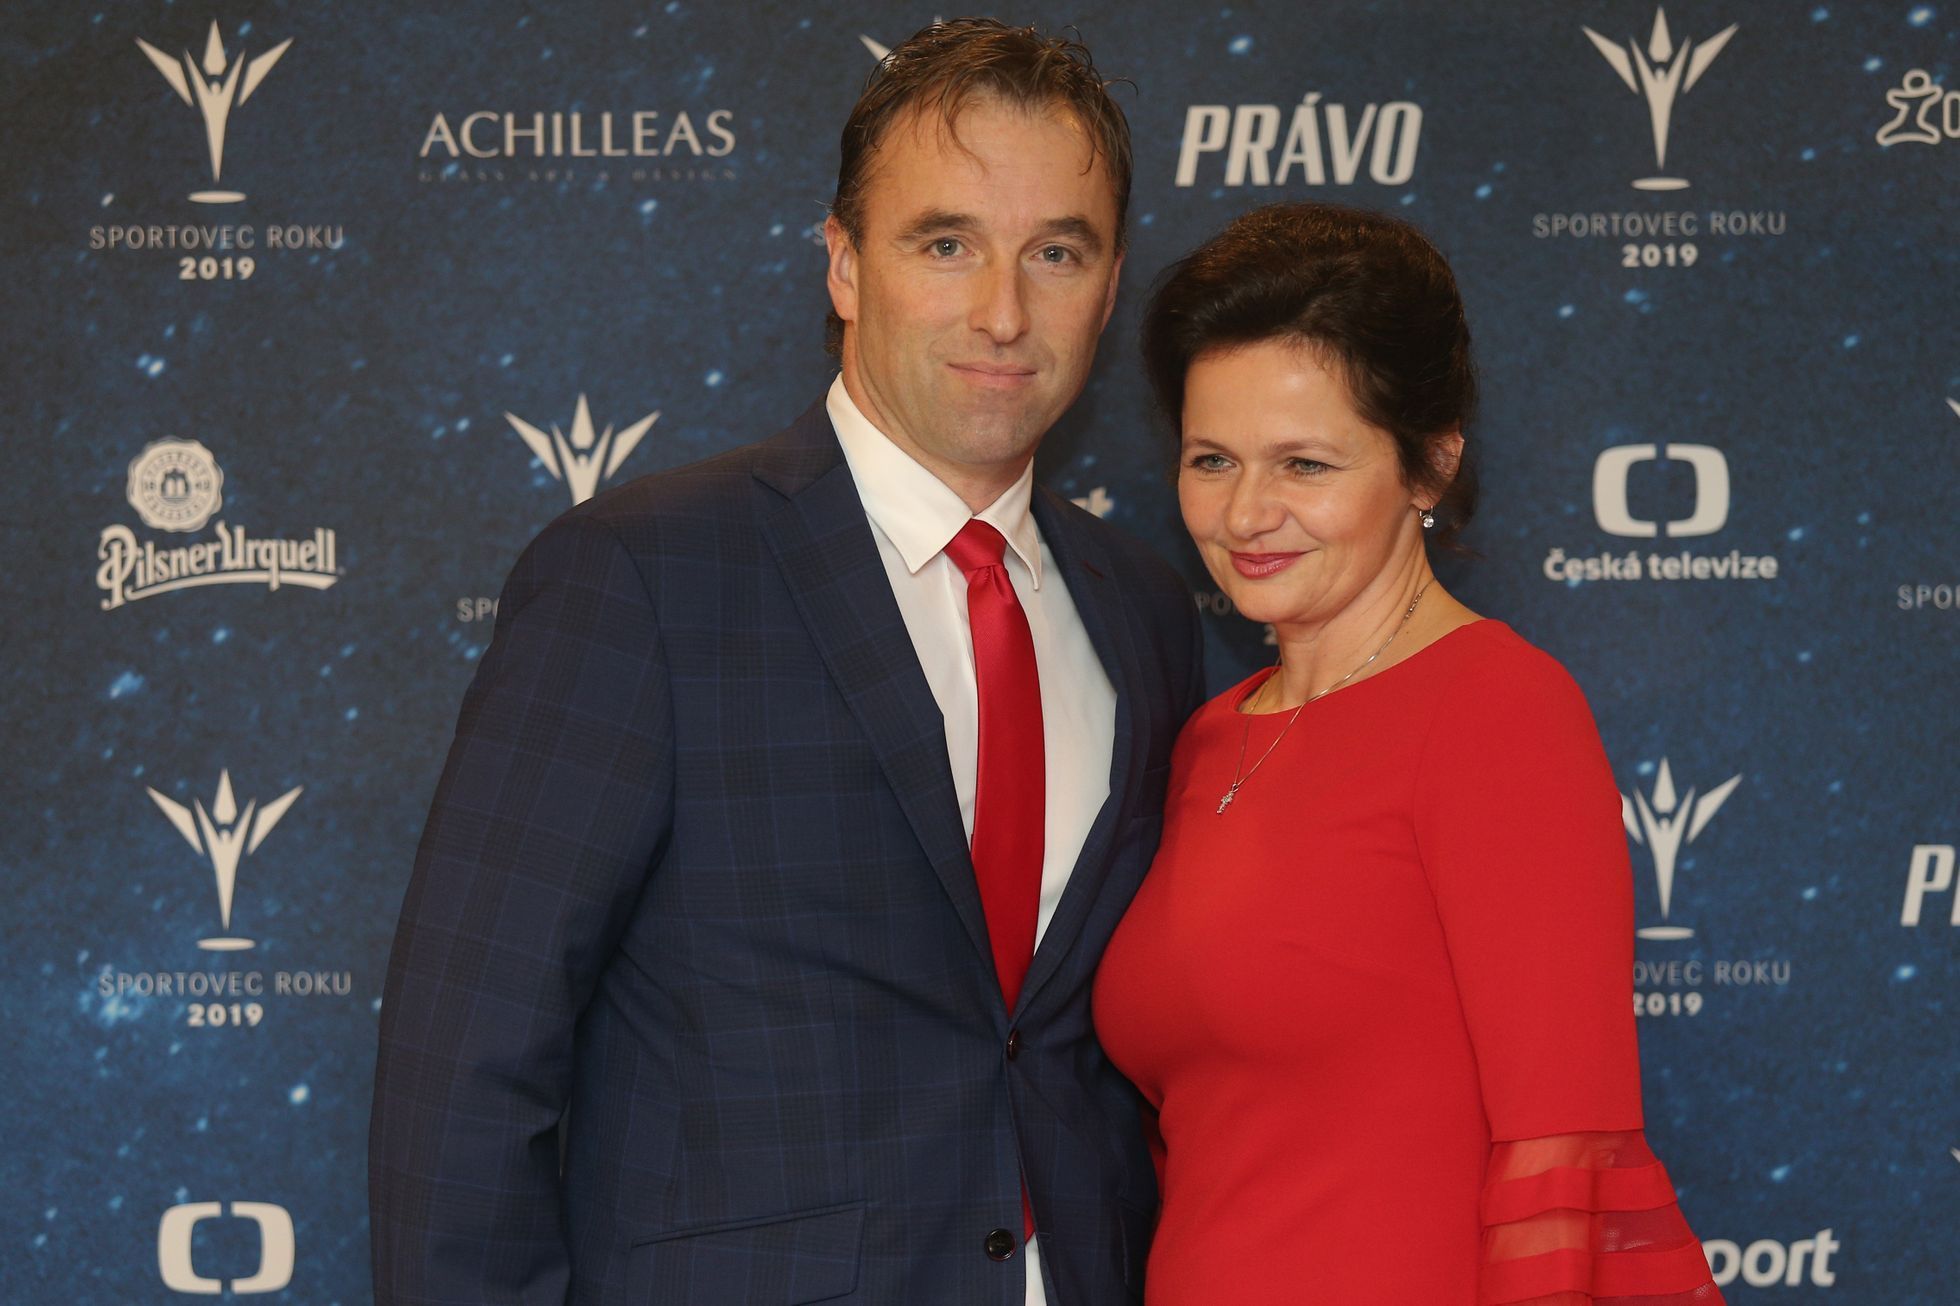 Sportovec roku 2019: Milan Hnilička s manželkou